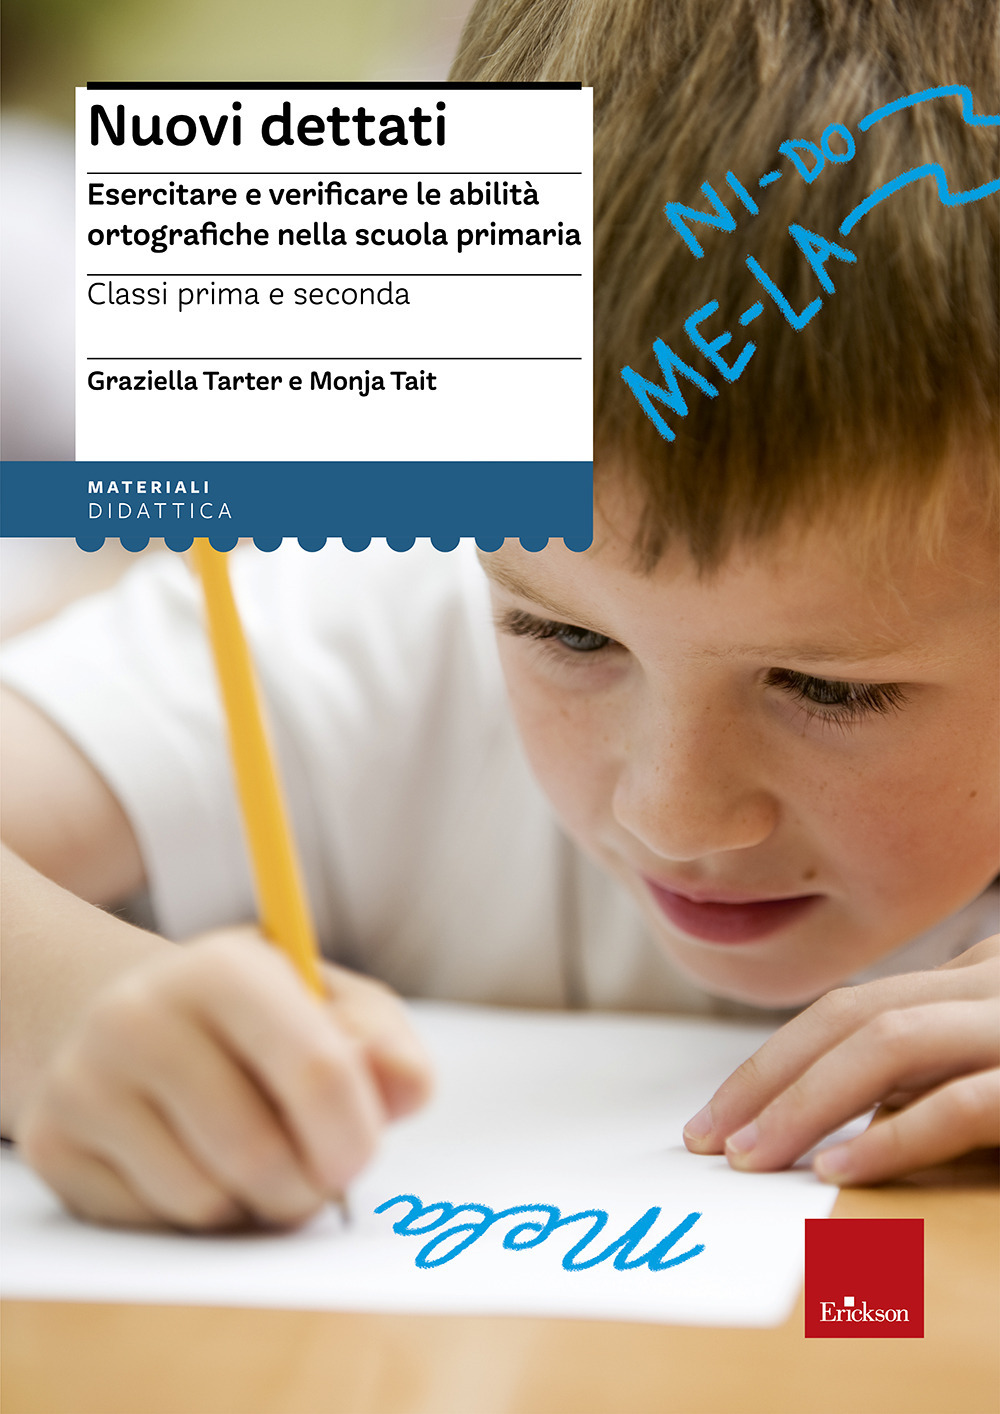 Nuovi dettati. Esercitare e verificare le abilità ortografiche nella scuola primaria. Per la classe 1ª e 2ª